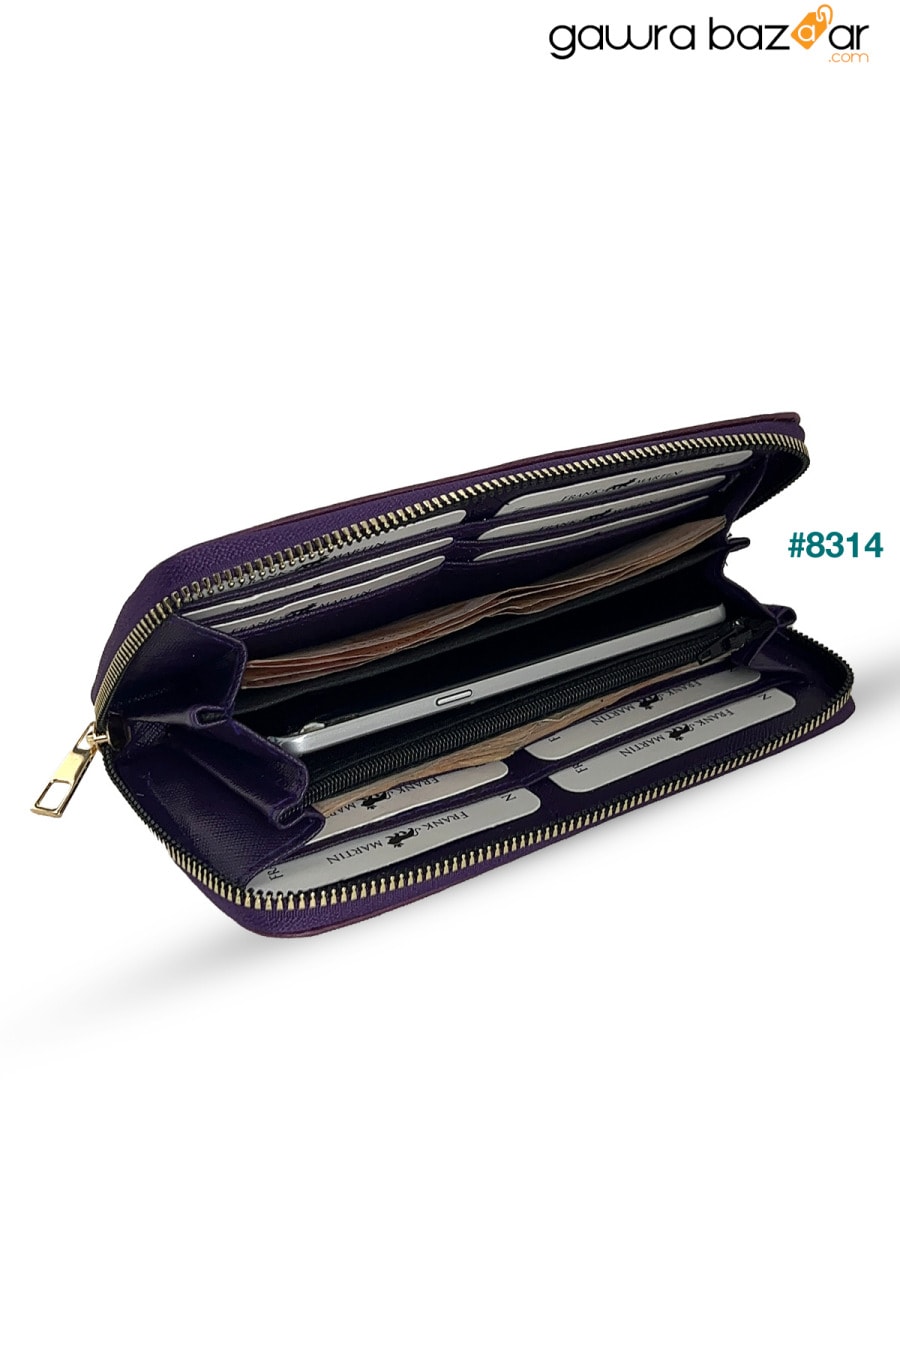 محفظة إيفا النسائية باللون الأرجواني مع صندوق جلدي للنقود المعدنية وحامل بطاقات بسحاب مع حجرة للهاتف Frank Martin 2